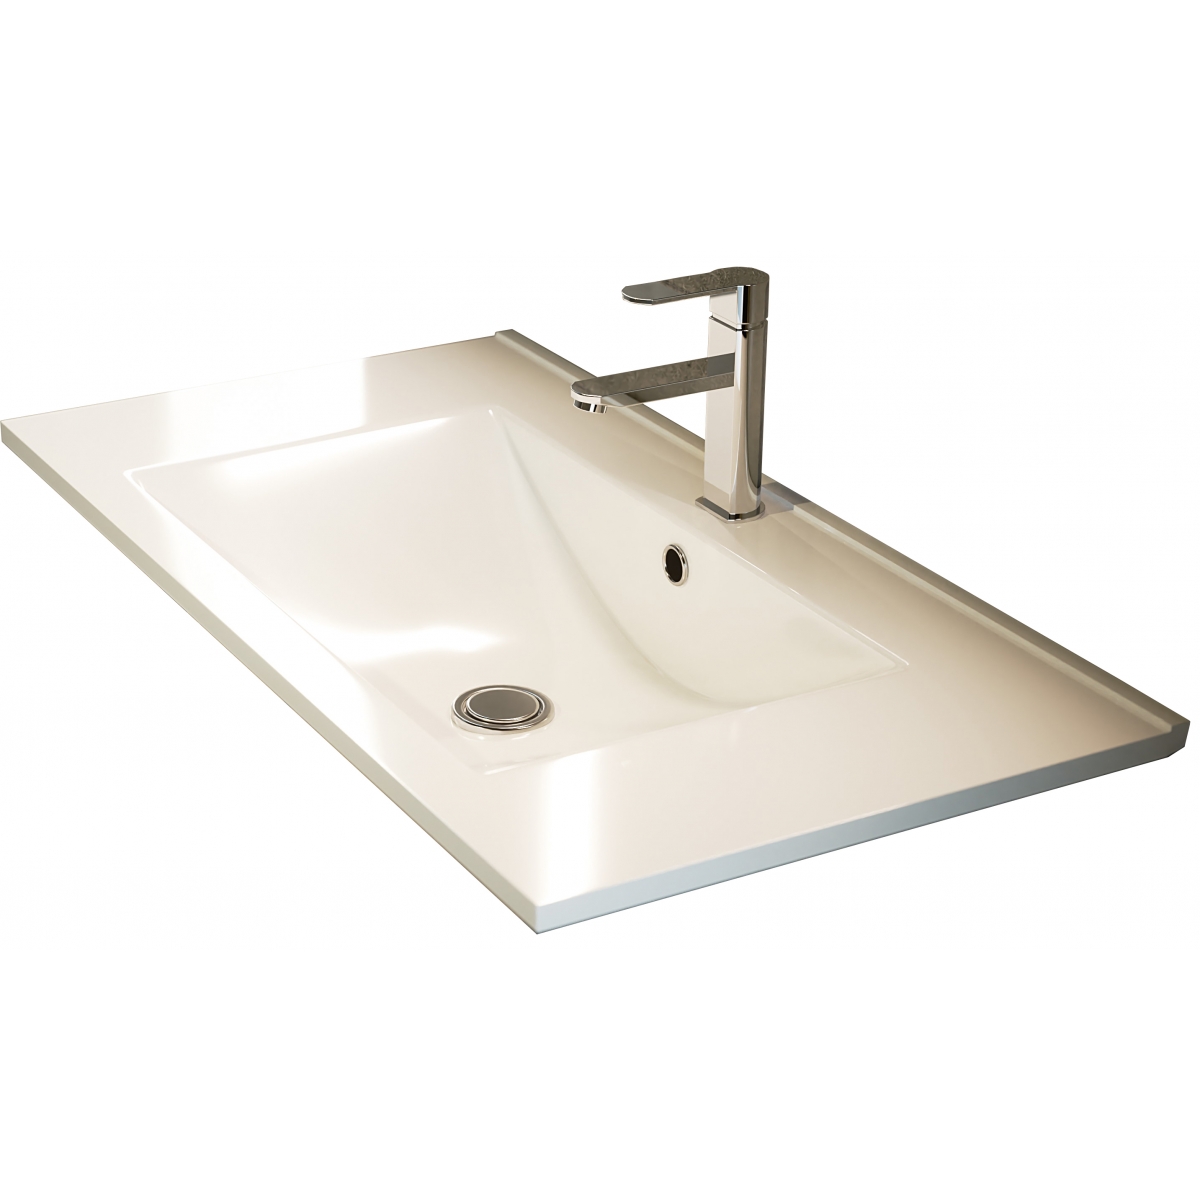 Fotos ambiente de Mueble de baño suspendido Dundee de 60 cm de ancho color Hibernian con lavabo integrado [54328]